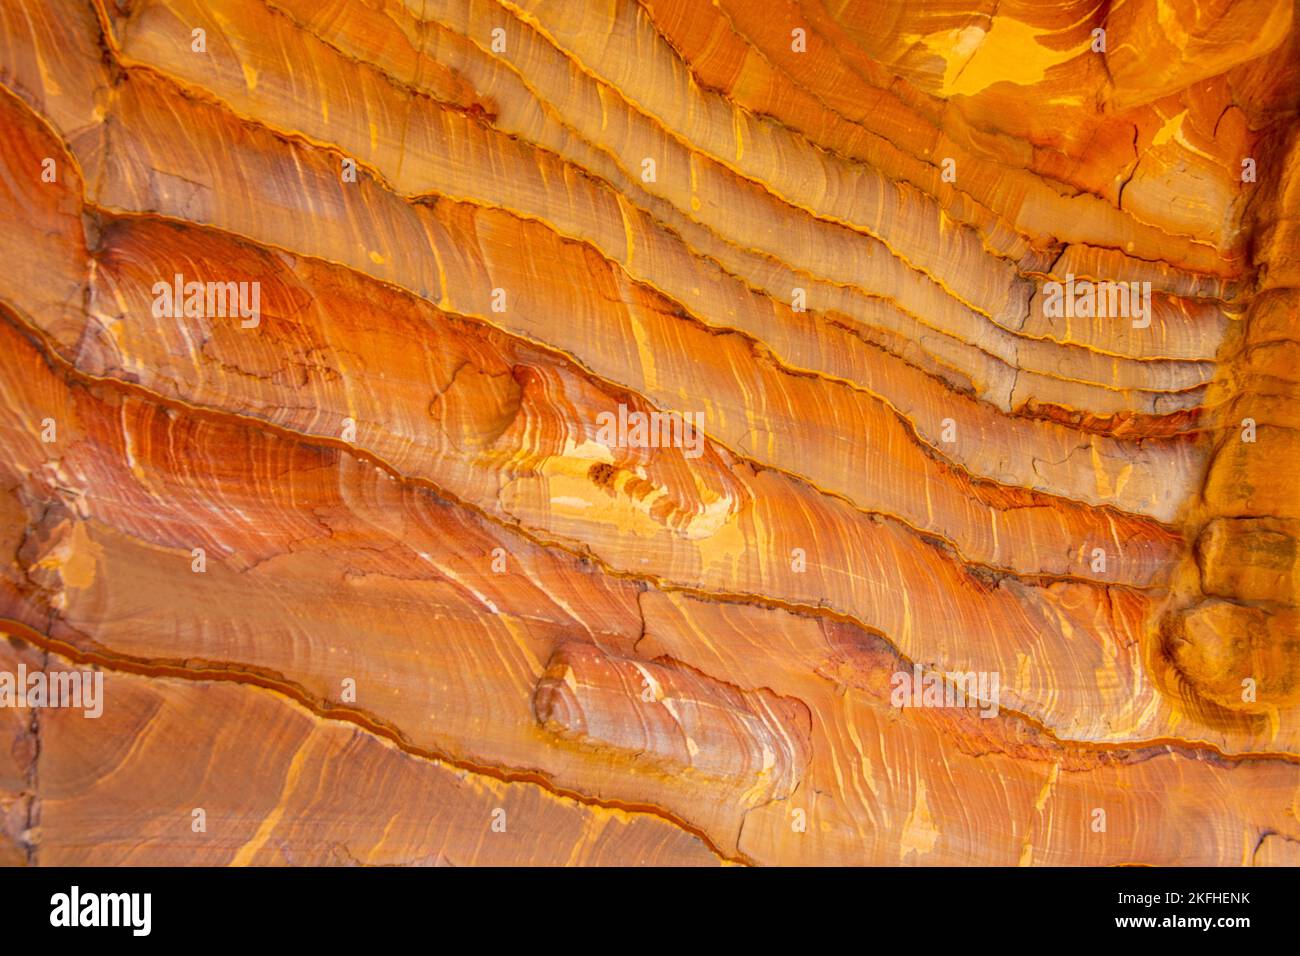 Nahansicht von geologischen Formationen, die Streifen in orangefarbener Farbe bilden Stockfoto